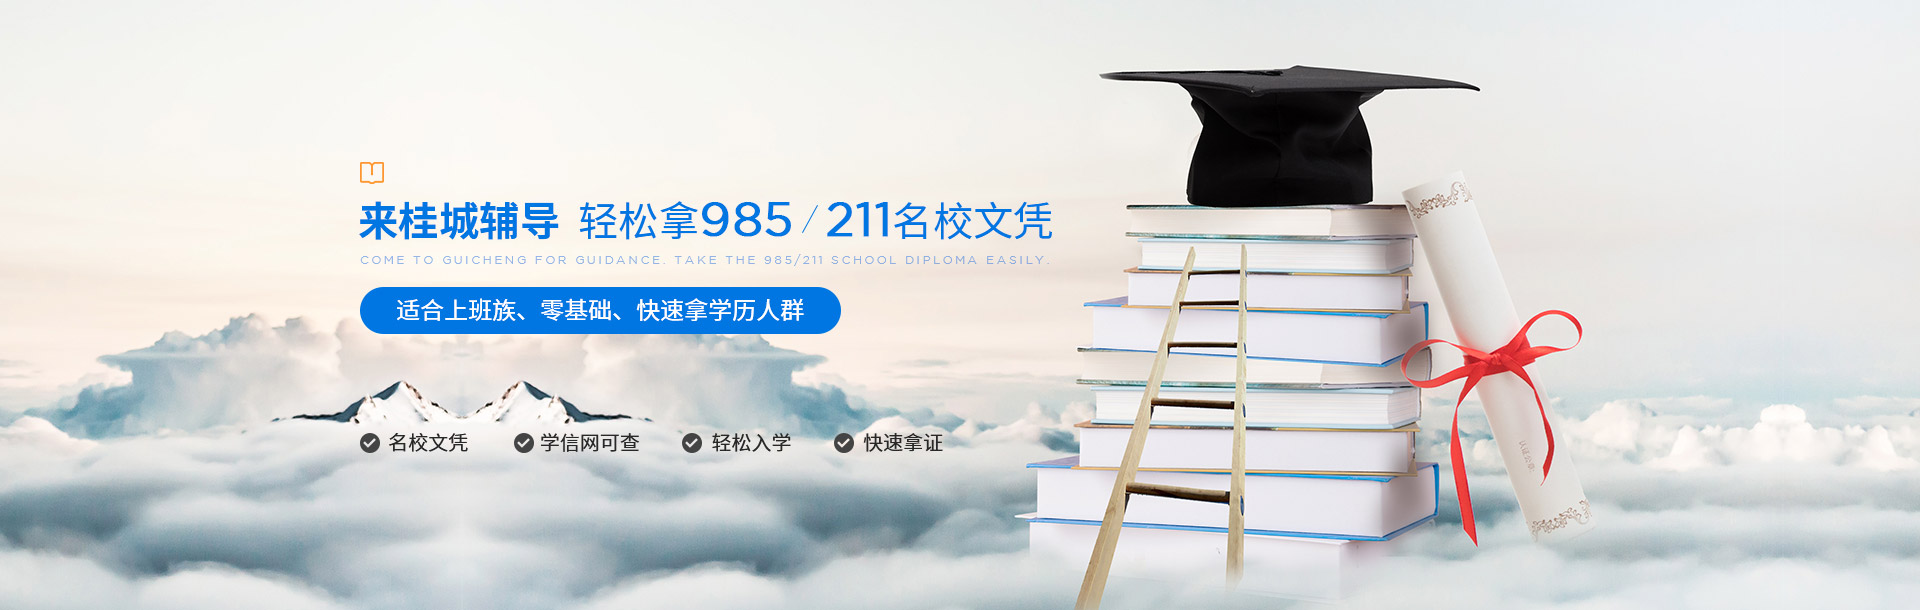 桂城自学站-来桂城辅导，轻松拿985/211名校文凭